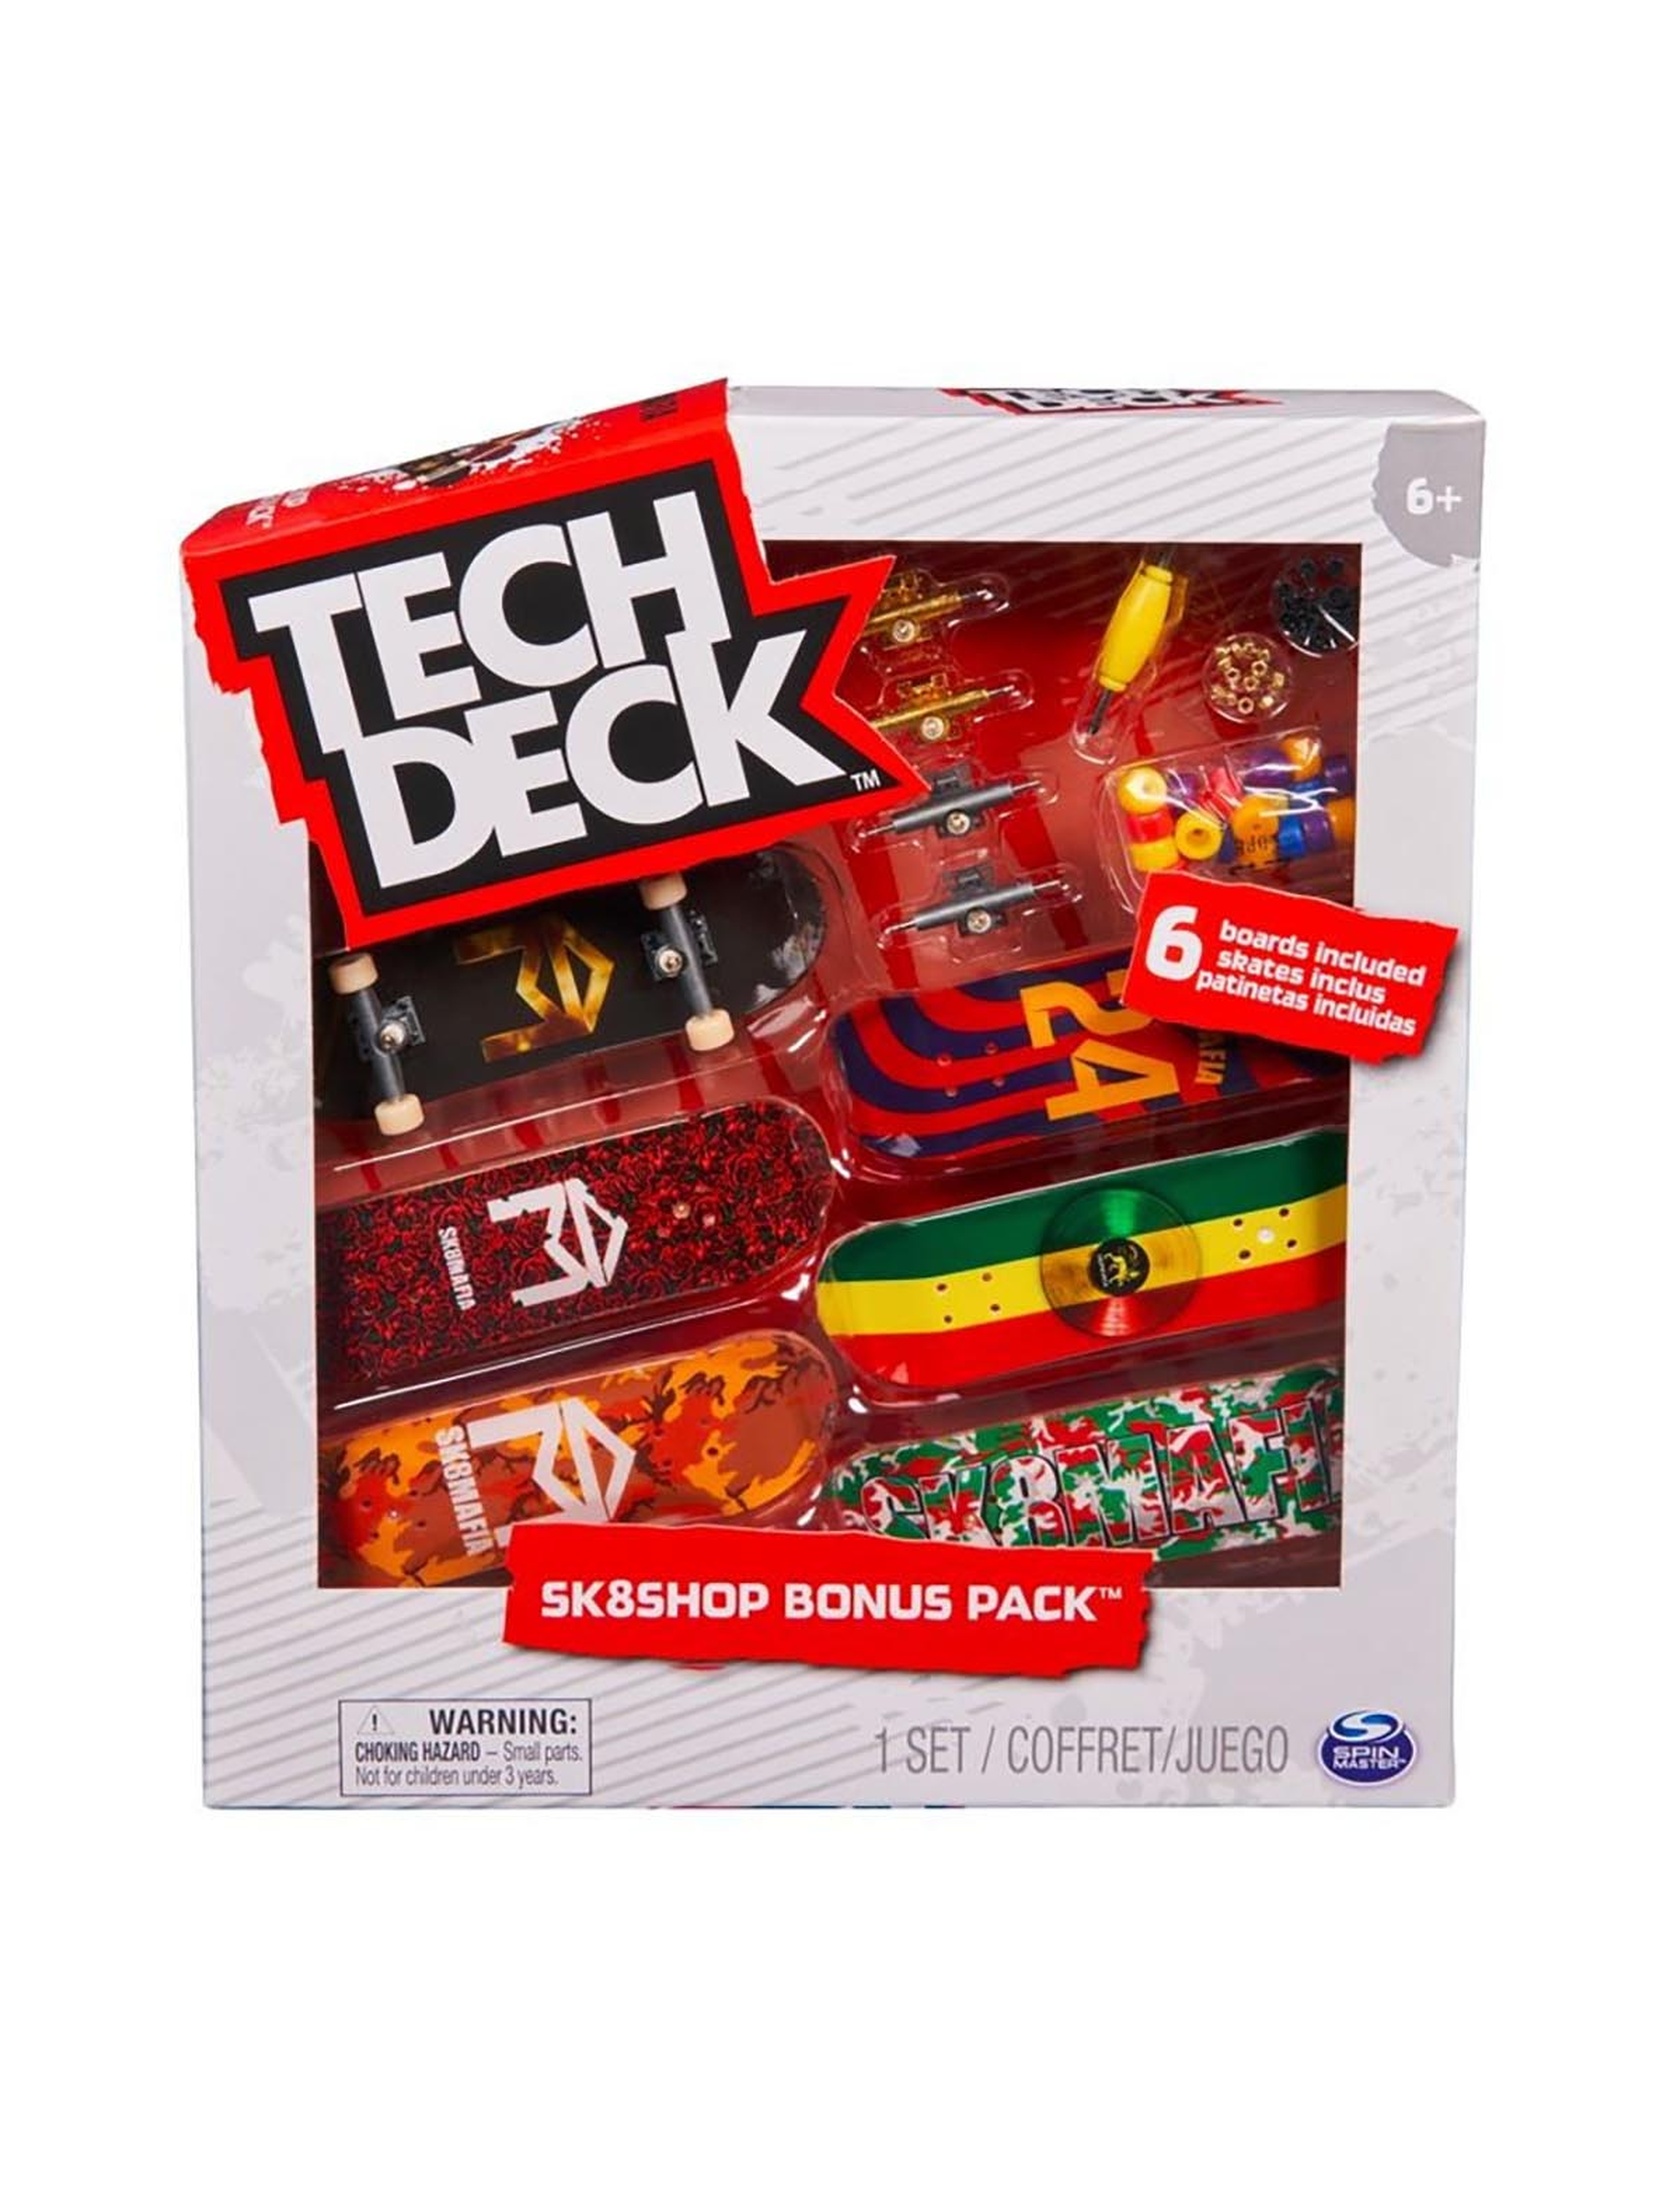 Zestaw Tech Deck Sk8Shop 20140838